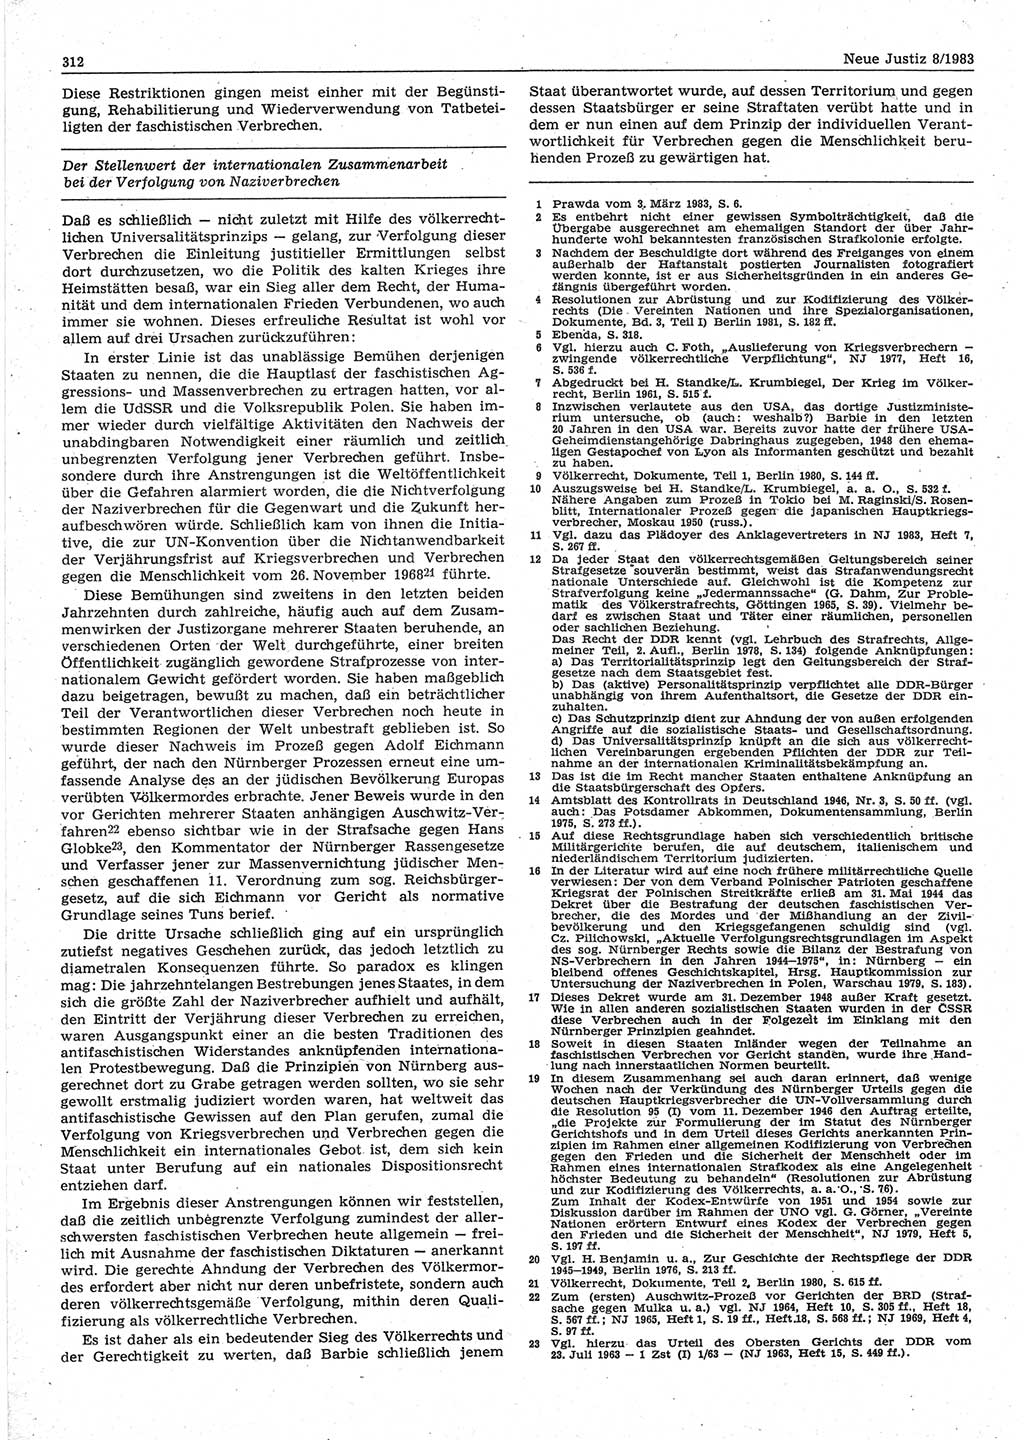 Neue Justiz (NJ), Zeitschrift für sozialistisches Recht und Gesetzlichkeit [Deutsche Demokratische Republik (DDR)], 37. Jahrgang 1983, Seite 312 (NJ DDR 1983, S. 312)